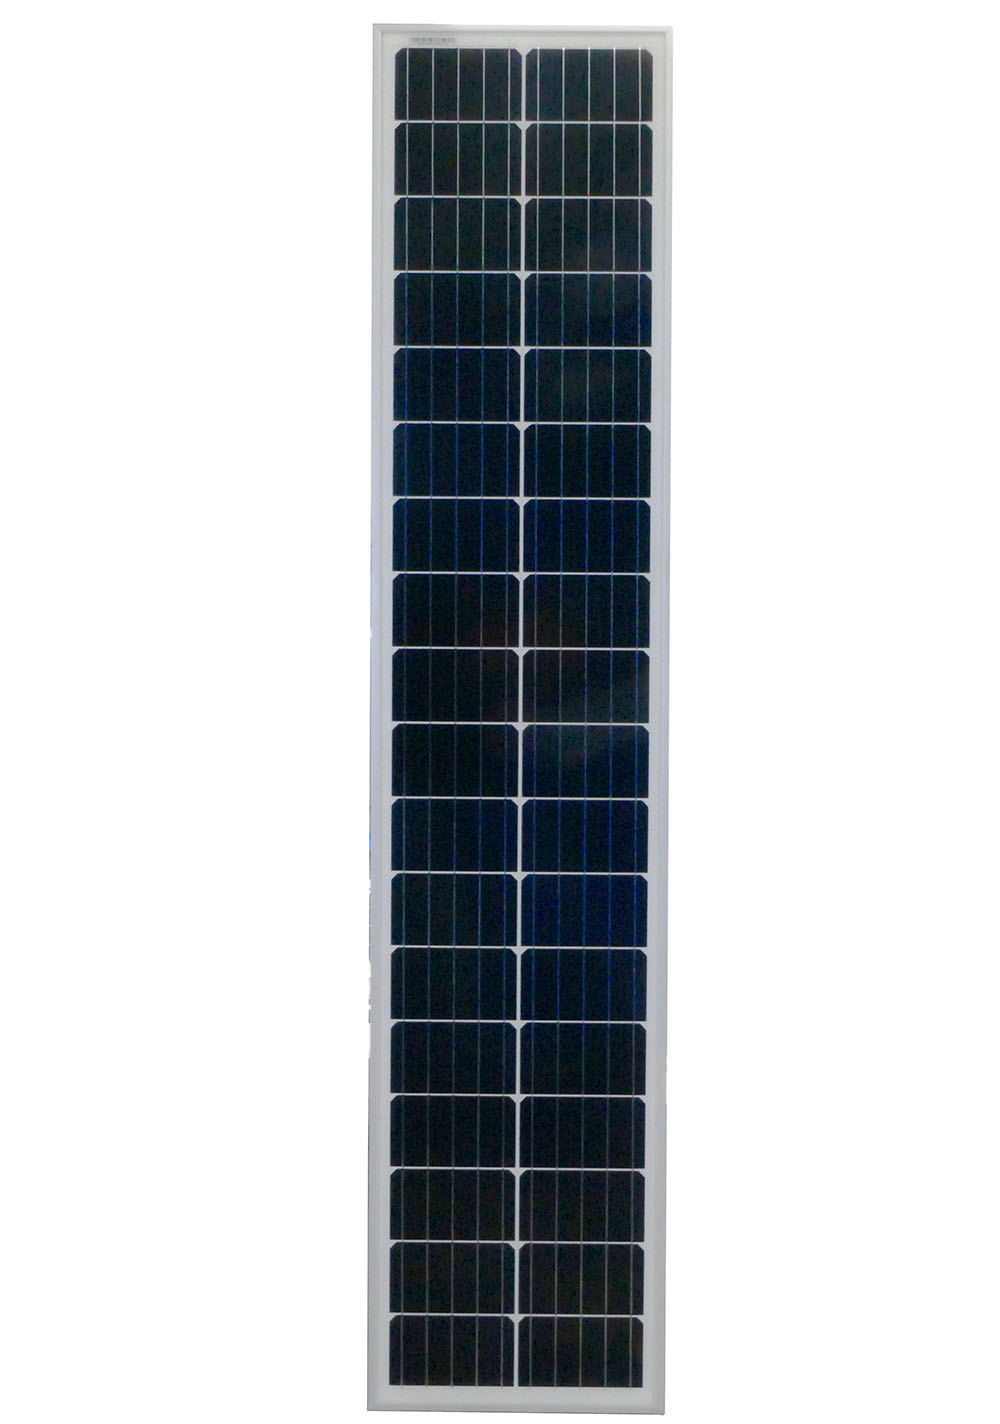 Guide de montage - kit solaire autonome 48V - 1500W +